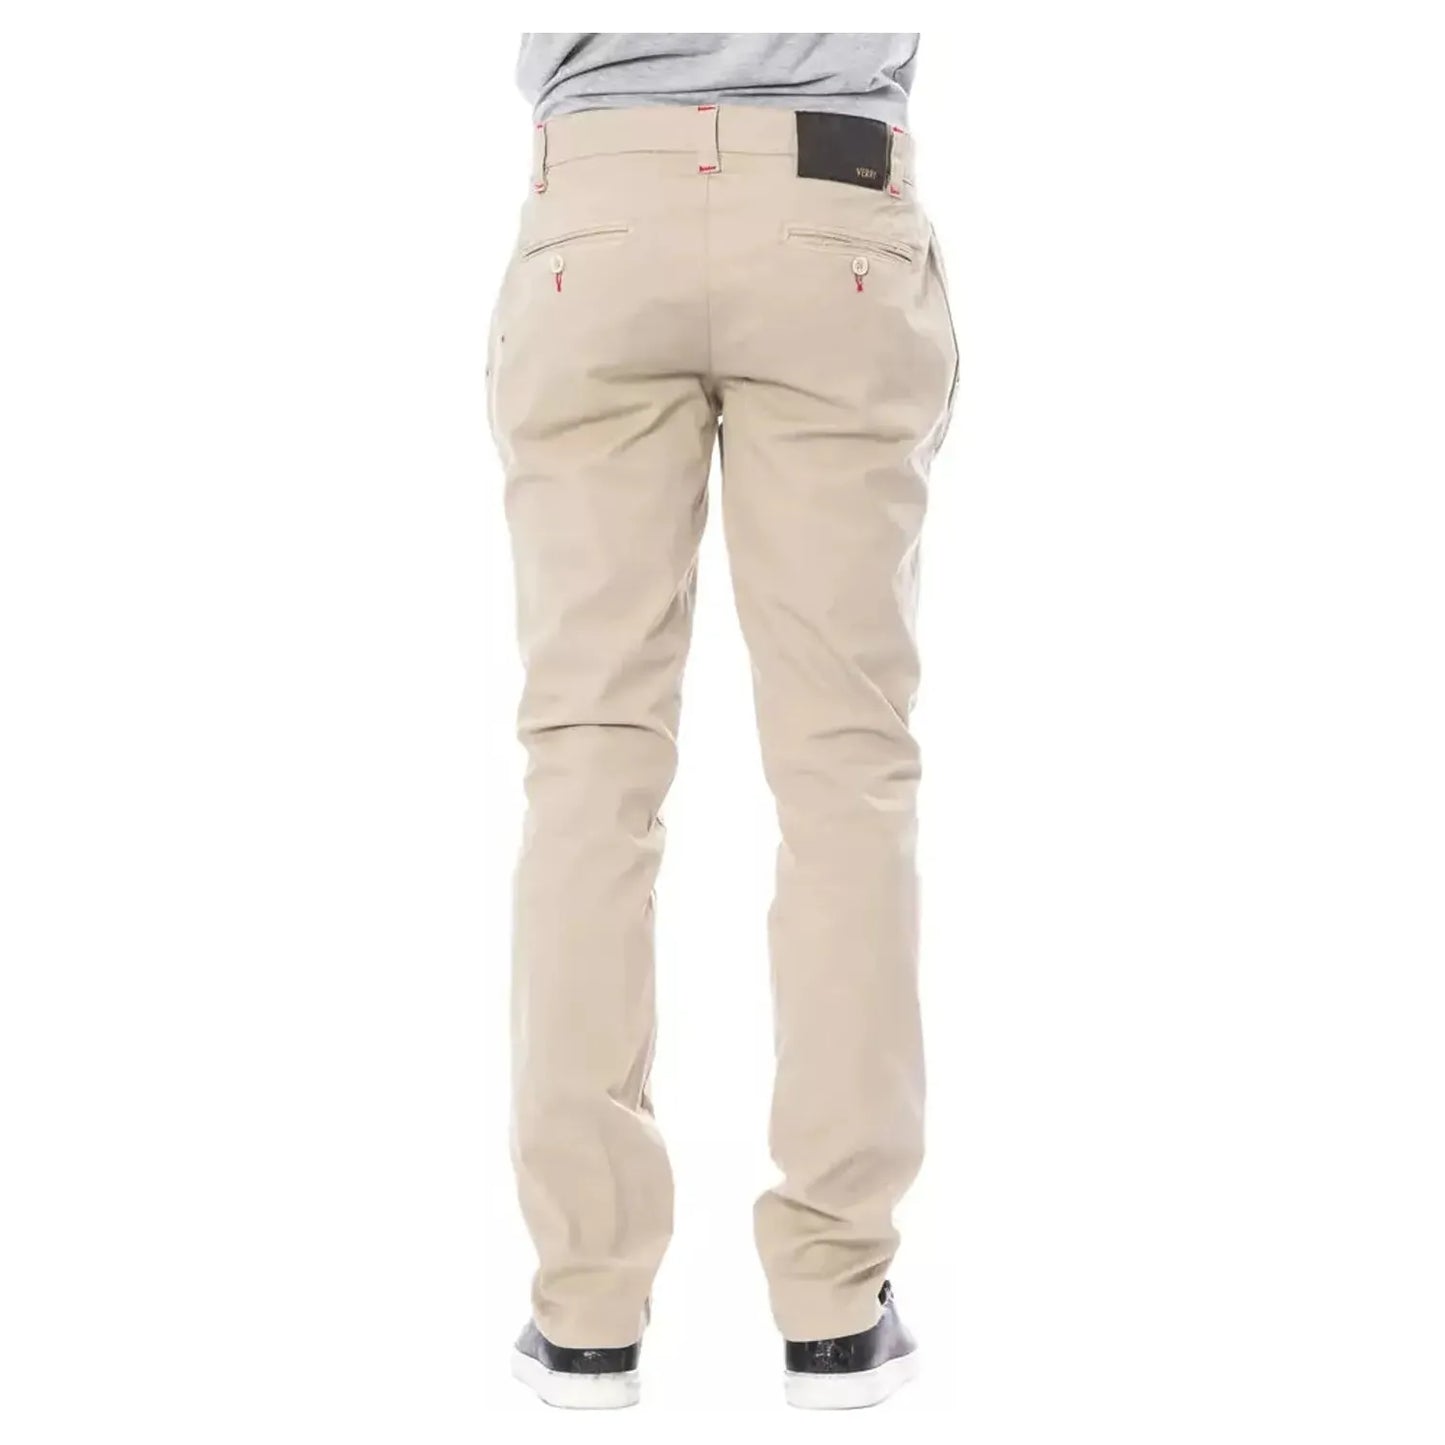 Verri Beige Slim Fit Chino Pants beige-cotton-jeans-pant-14 stock_product_image_18277_1015947059-16-cbc9198e-97f.webp